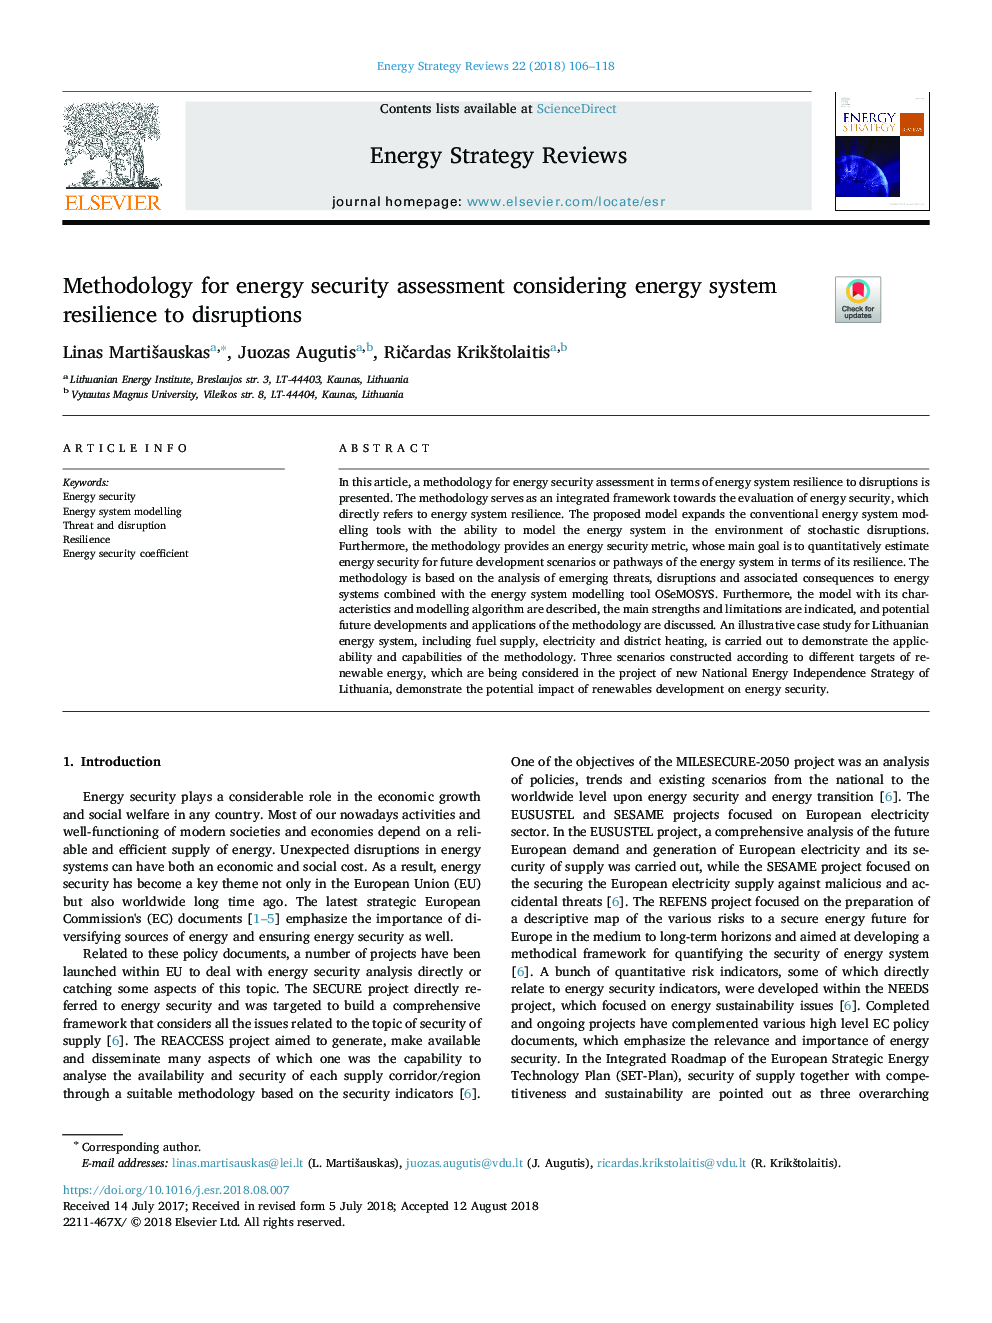 روش شناسی برای ارزیابی امنیت انرژی با توجه به انعطاف پذیری سیستم در برابر اختلالات